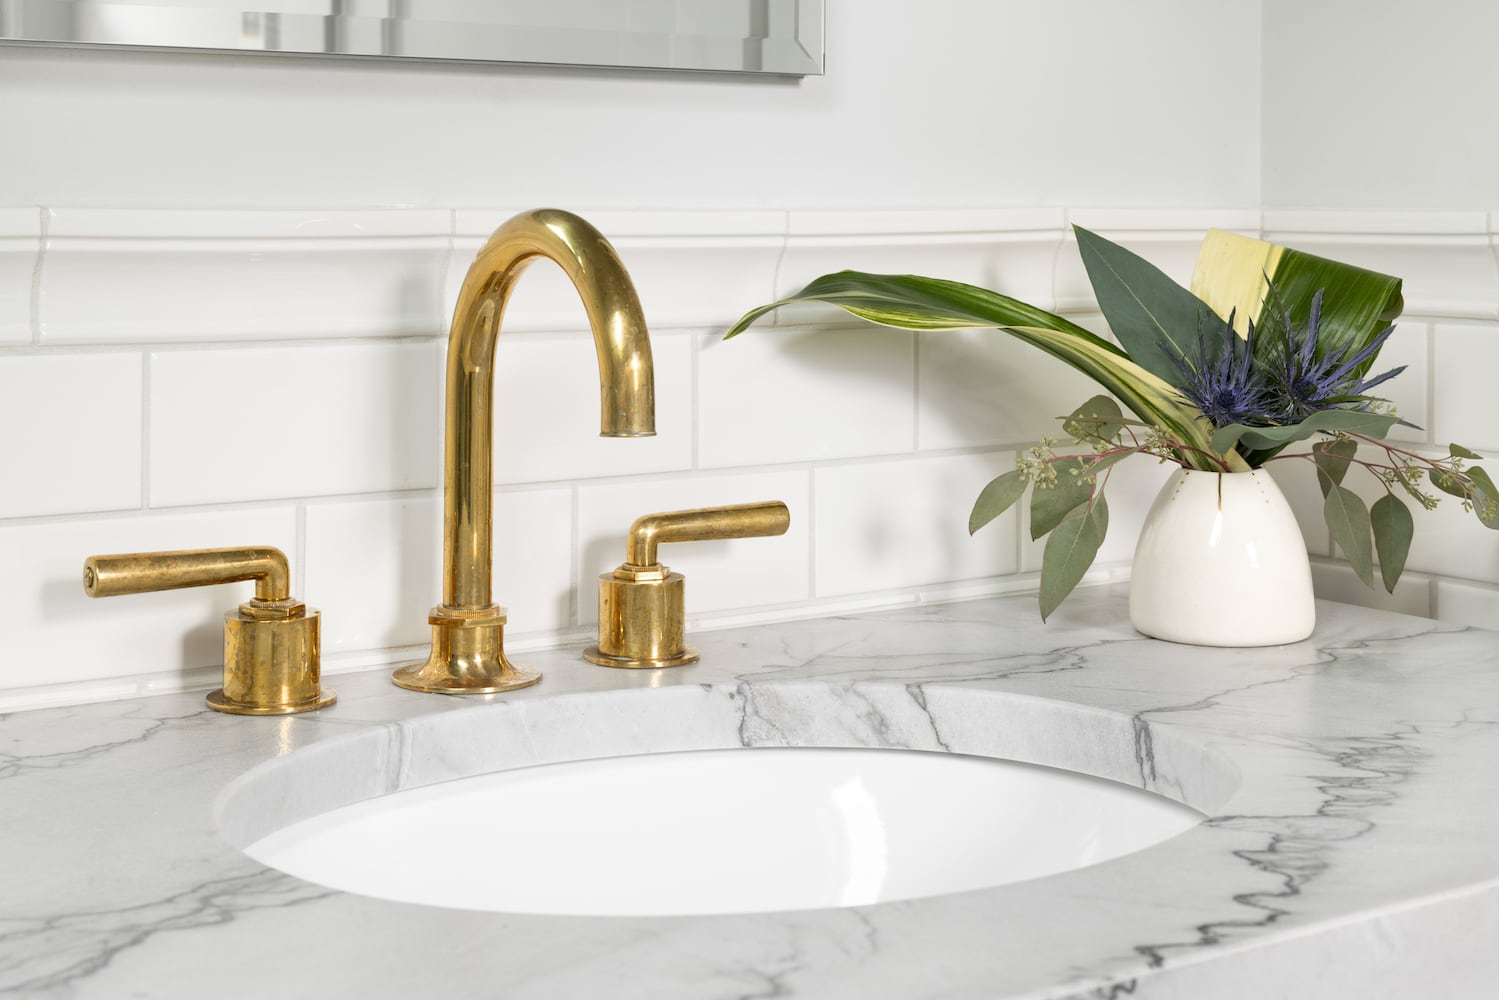 Powder room sink with polished gold faucet, quartz counter, white tile backsplash